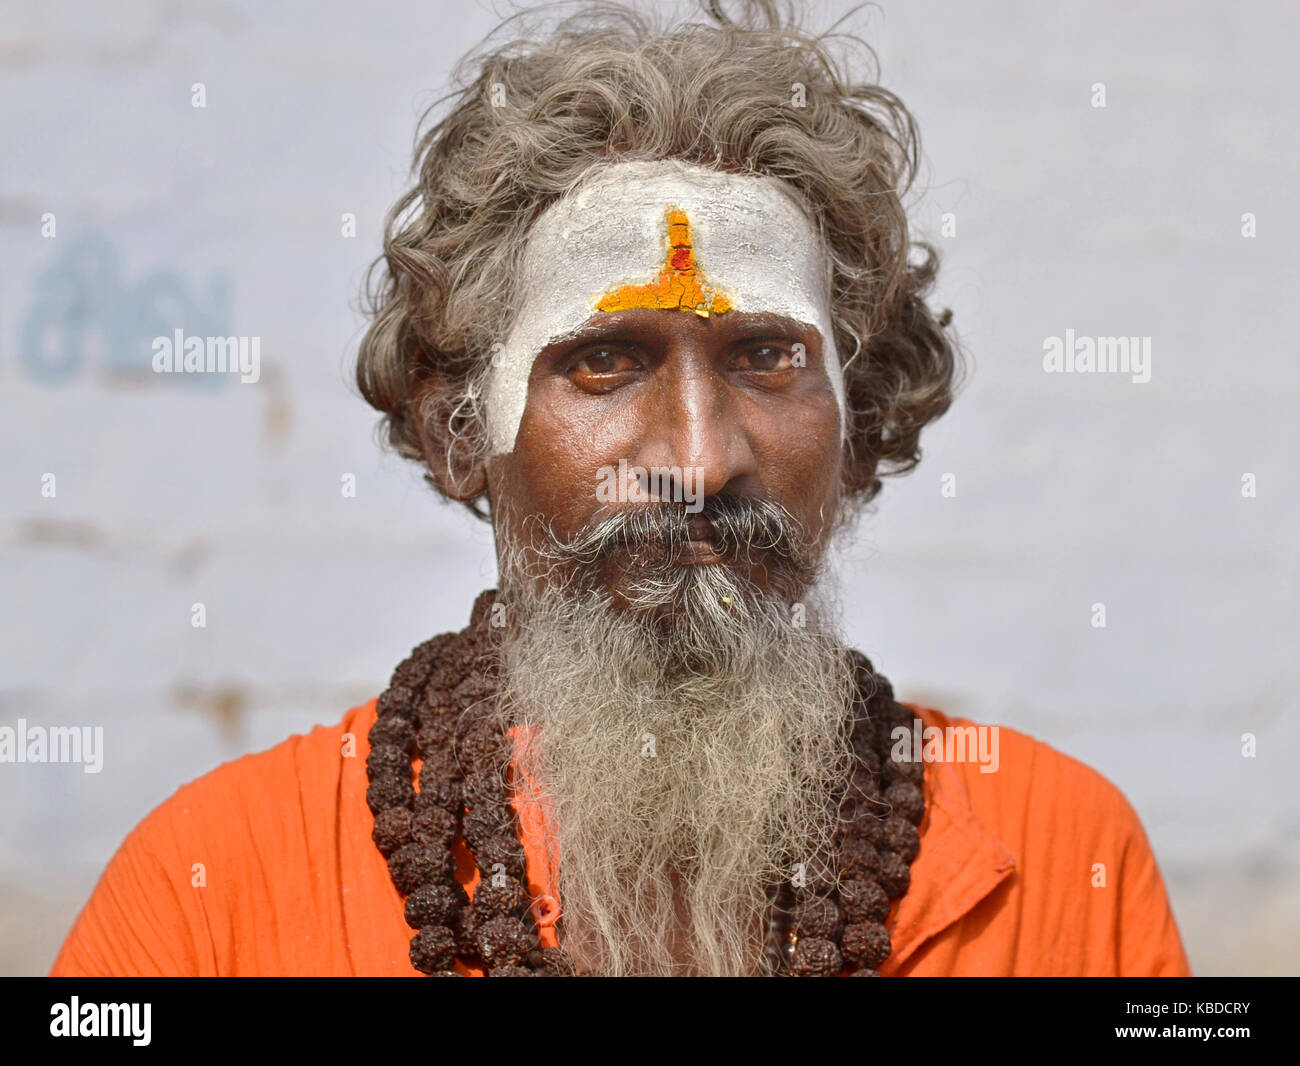 Middle-aged shaivite sadhu (saint homme hindou qui vénère shiva) avec blanc vibhuti, portant des chaînes de grandes perles rudraksha prière sur sa robe orange Banque D'Images